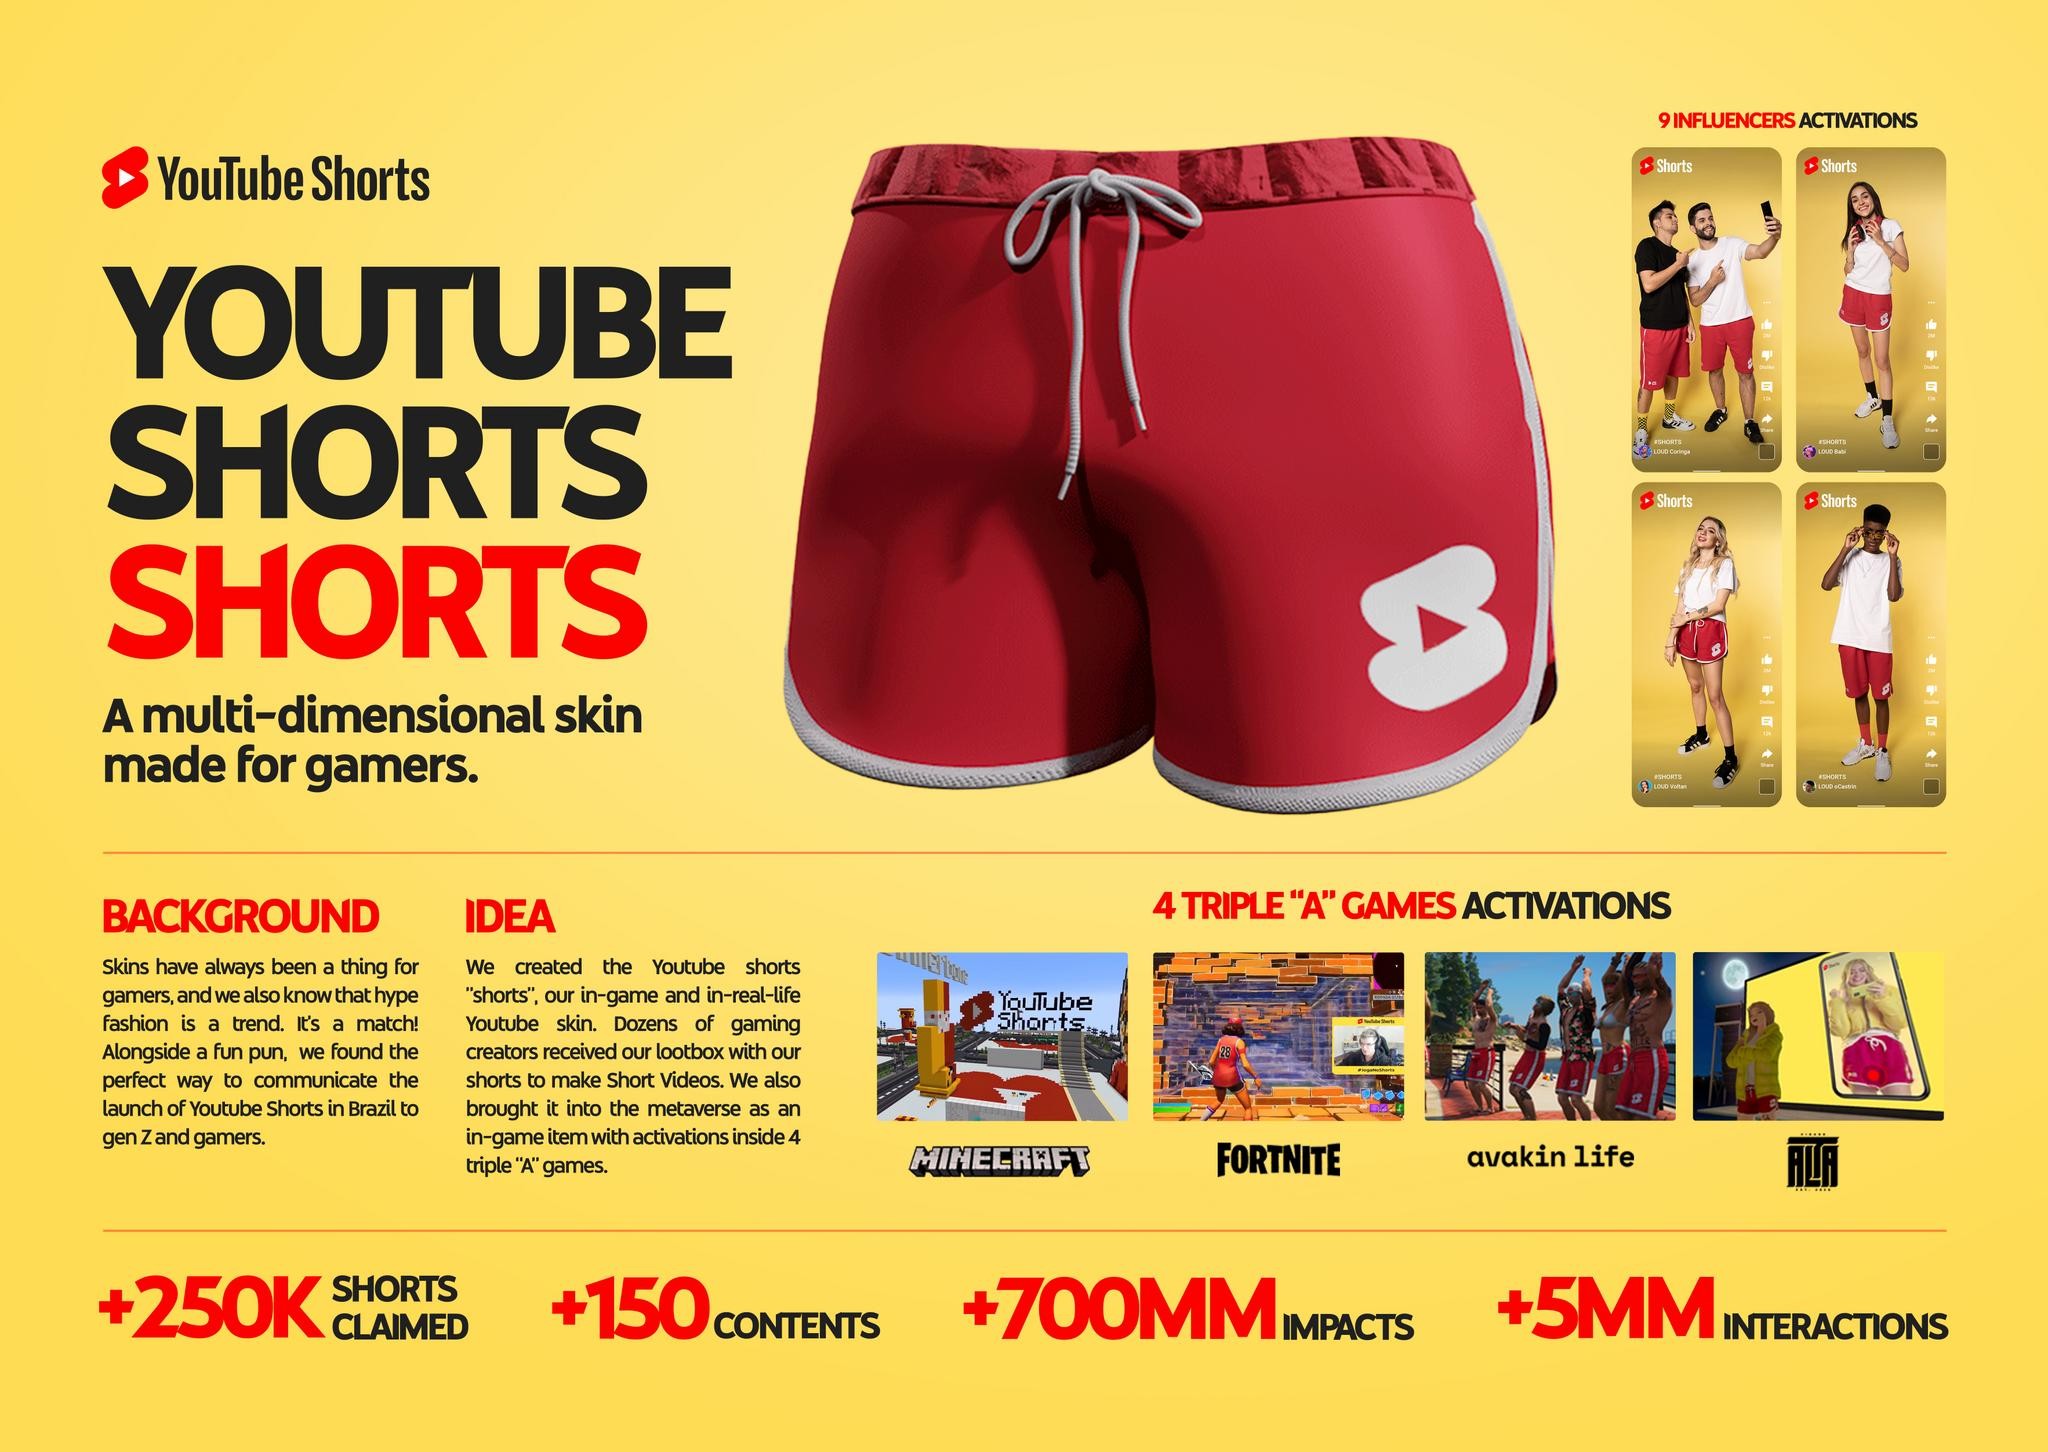 Youtube Shorts "Shorts"